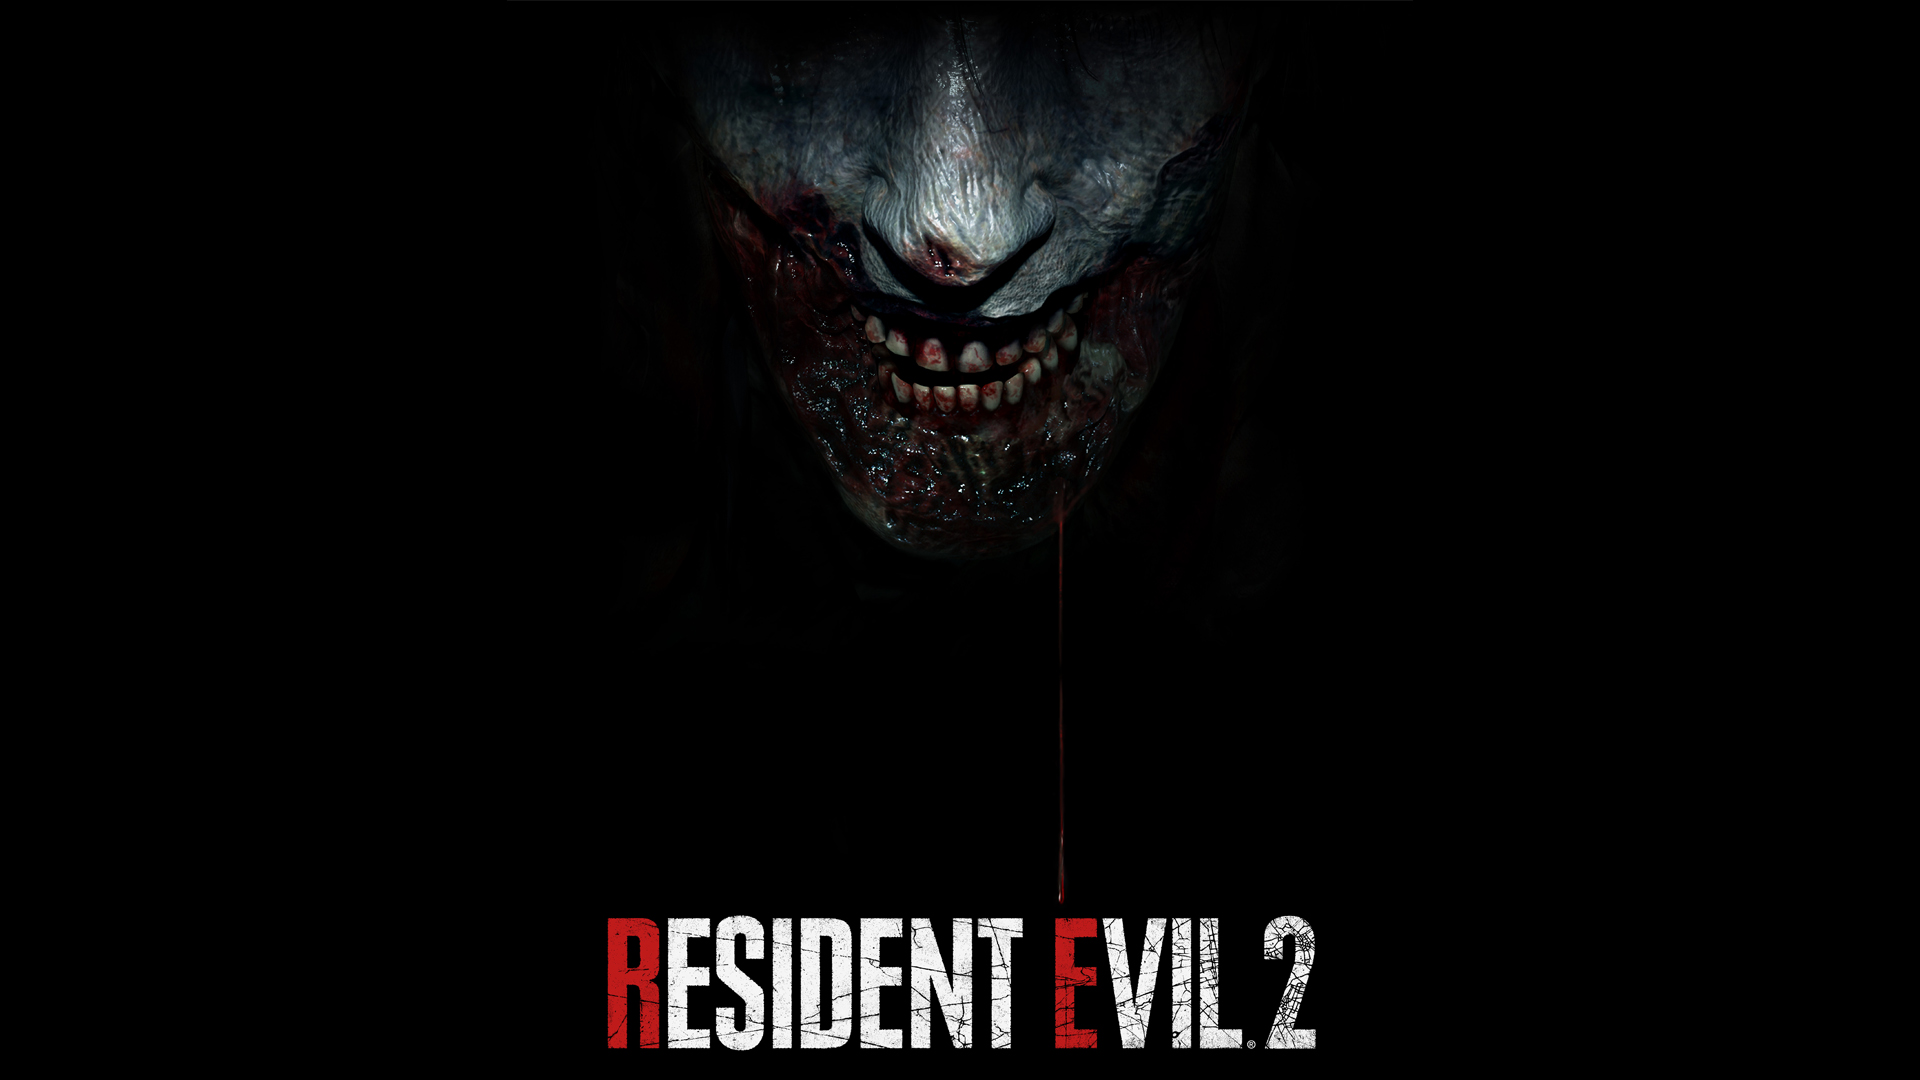 Resident Evil 2 Remake ön siparişe açıldı: Sistem gereksinimleri belli oldu